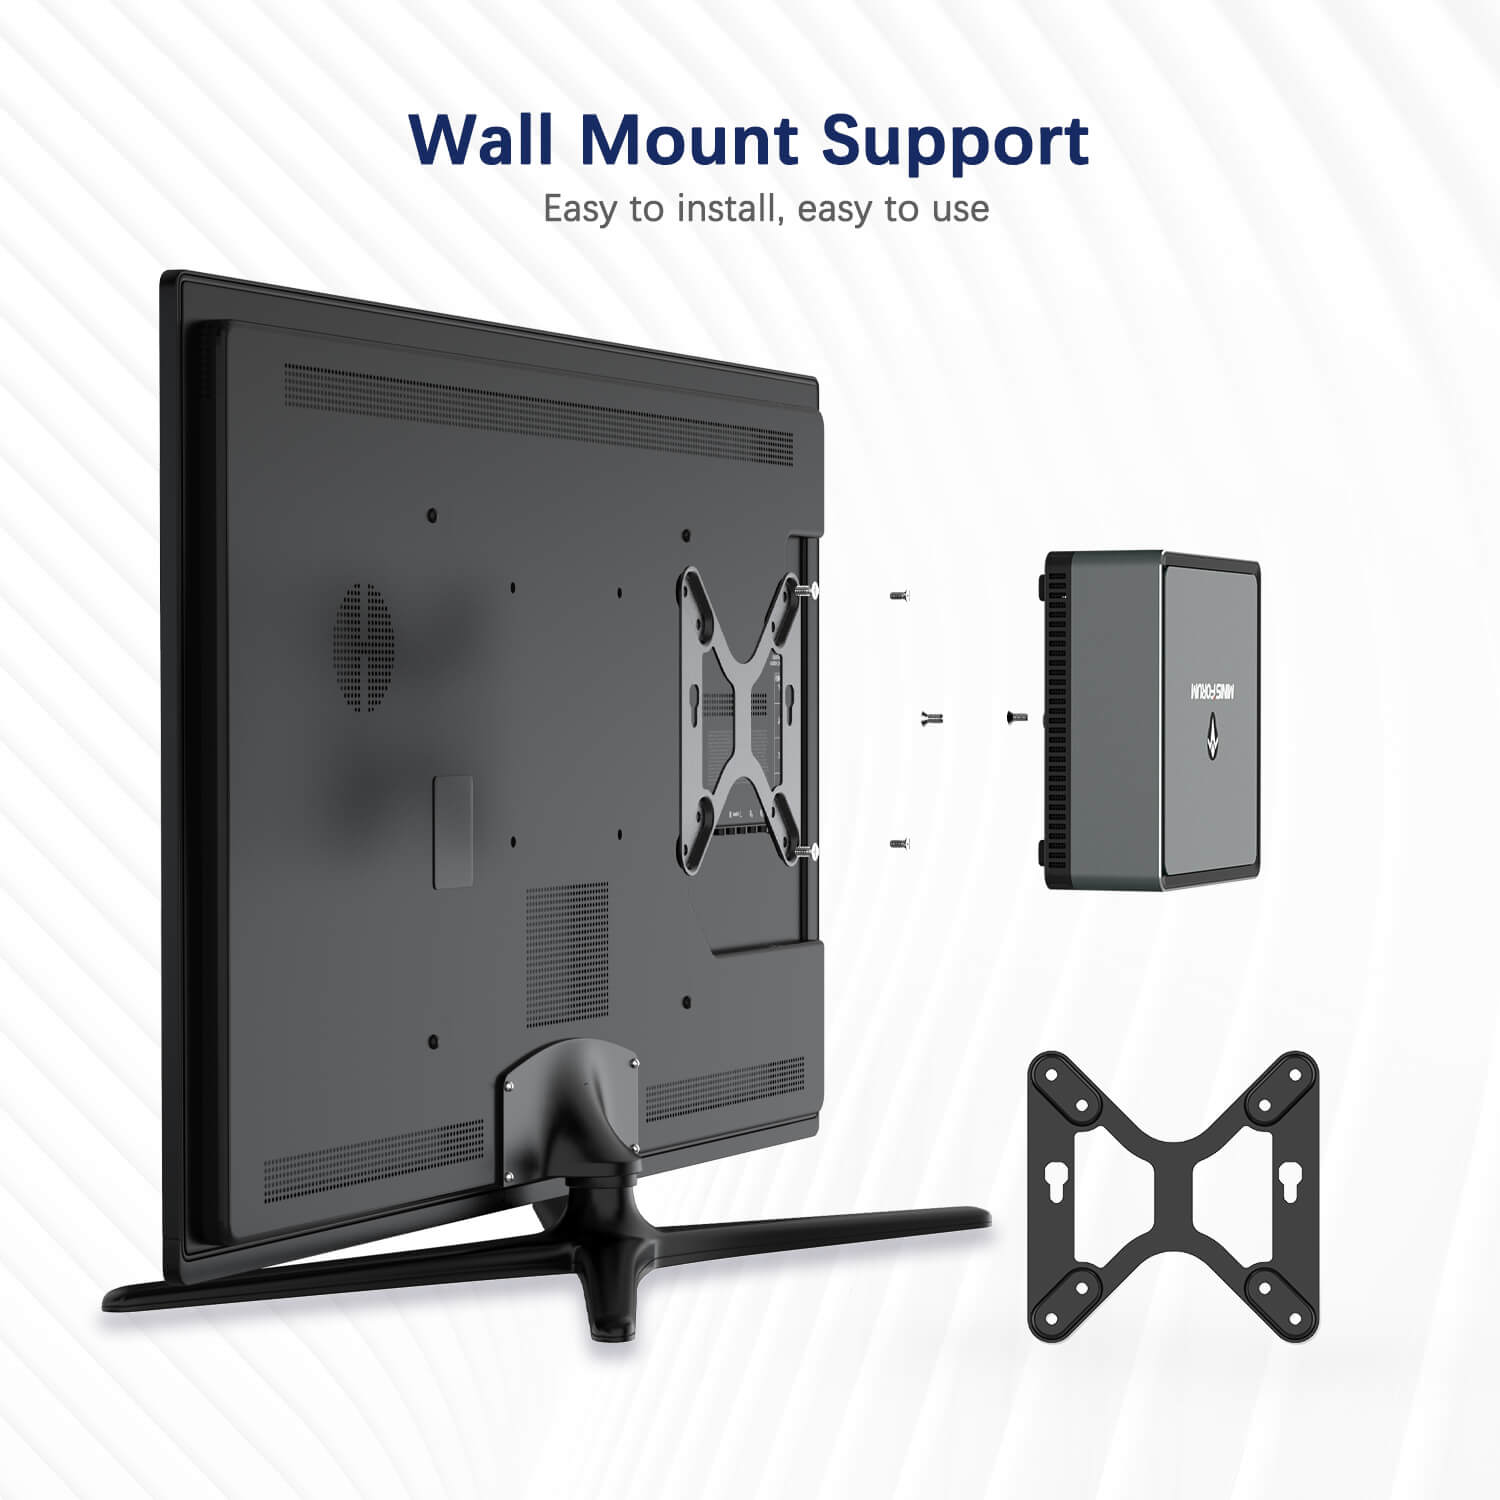 MinisForum EliteMini UM700 mostra il supporto per il montaggio a parete